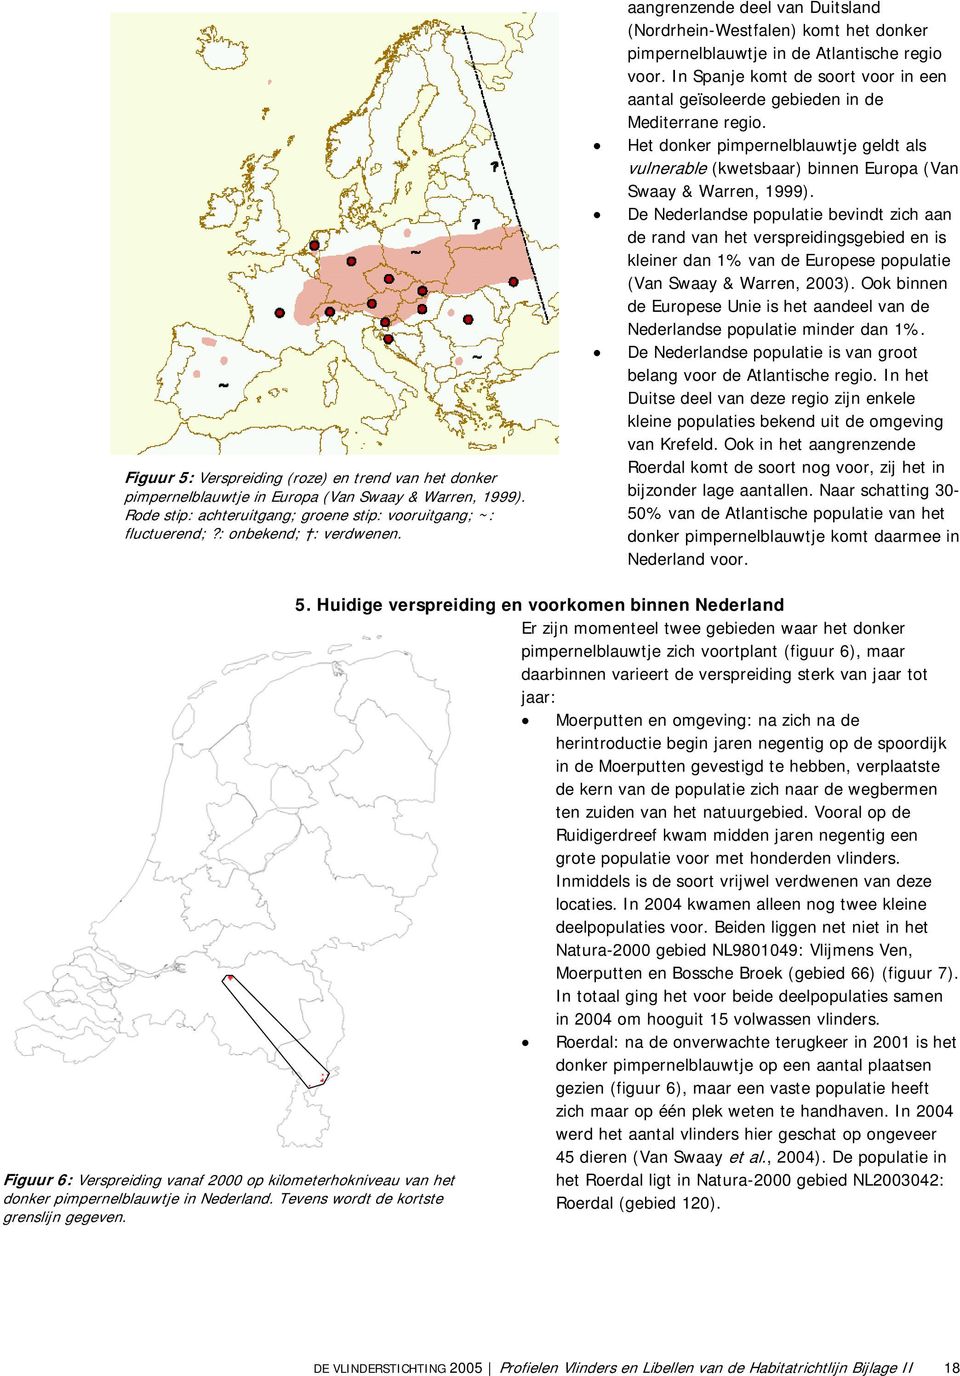 In Spanje komt de soort voor in een aantal geïsoleerde gebieden in de Mediterrane regio. Het donker pimpernelblauwtje geldt als vulnerable (kwetsbaar) binnen Europa (Van Swaay & Warren, 1999).